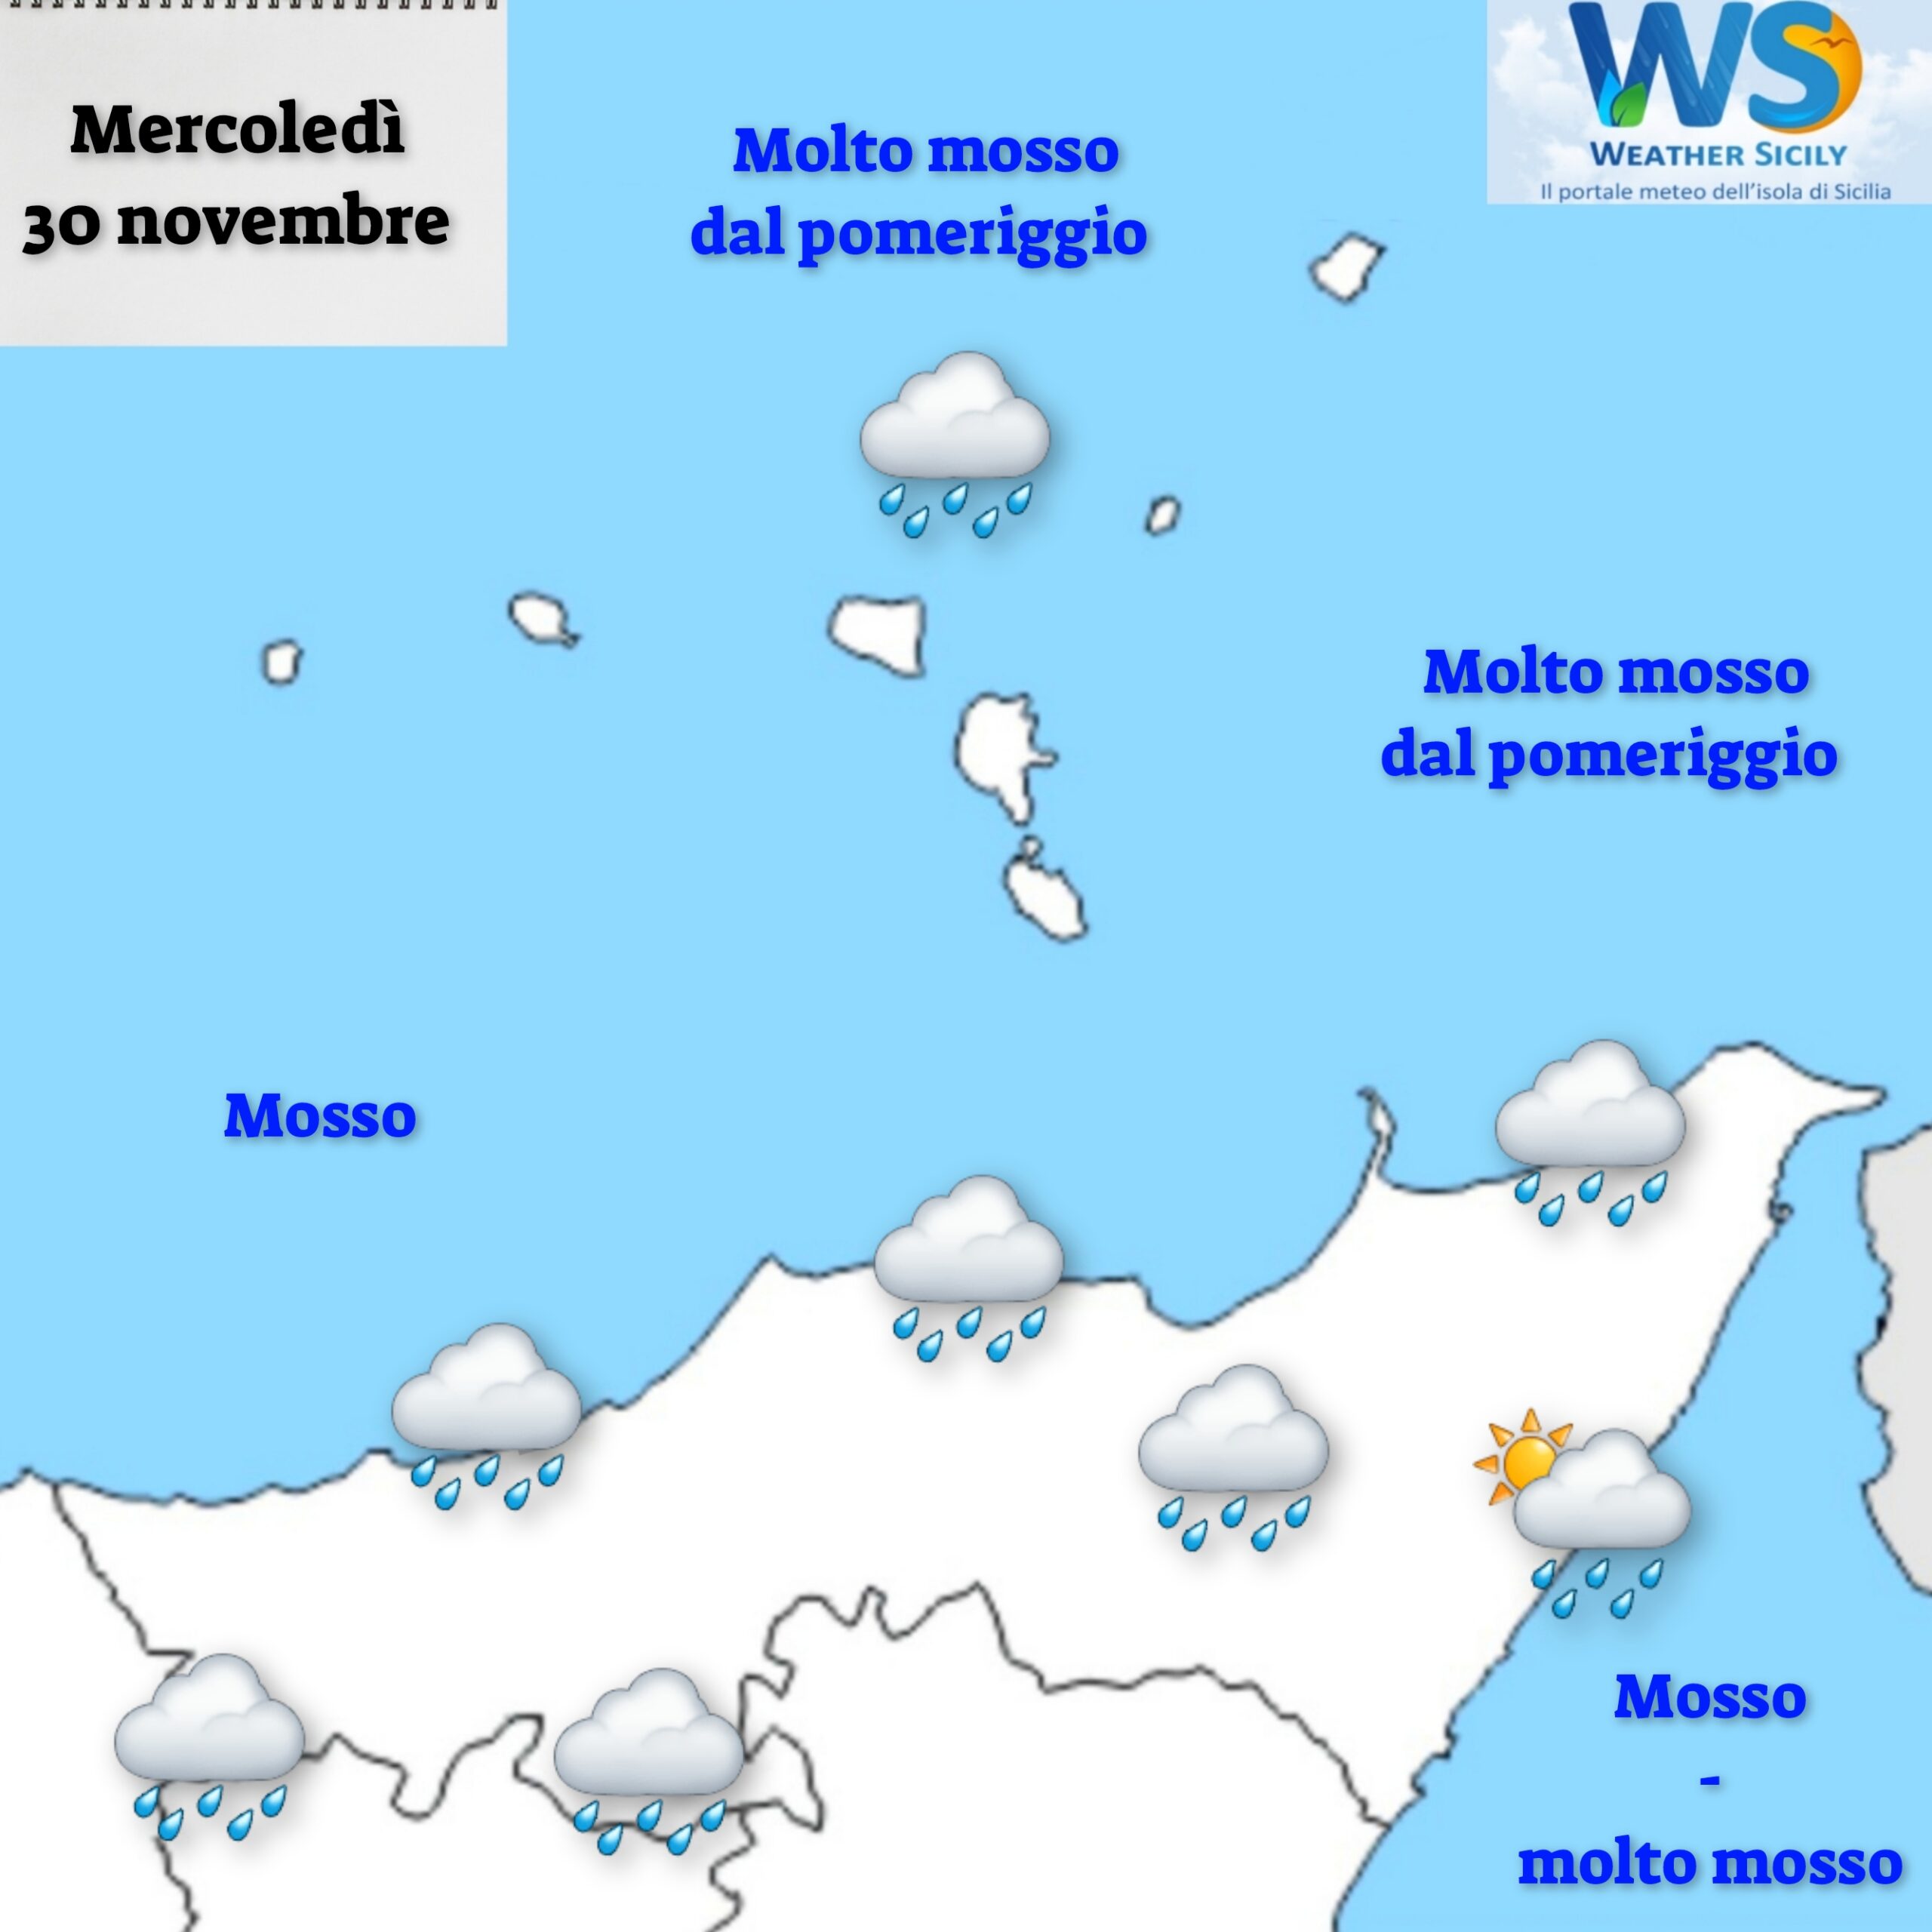 Meteo Messina: possibile un mercoledì molto instabile sul messinese tirrenico.